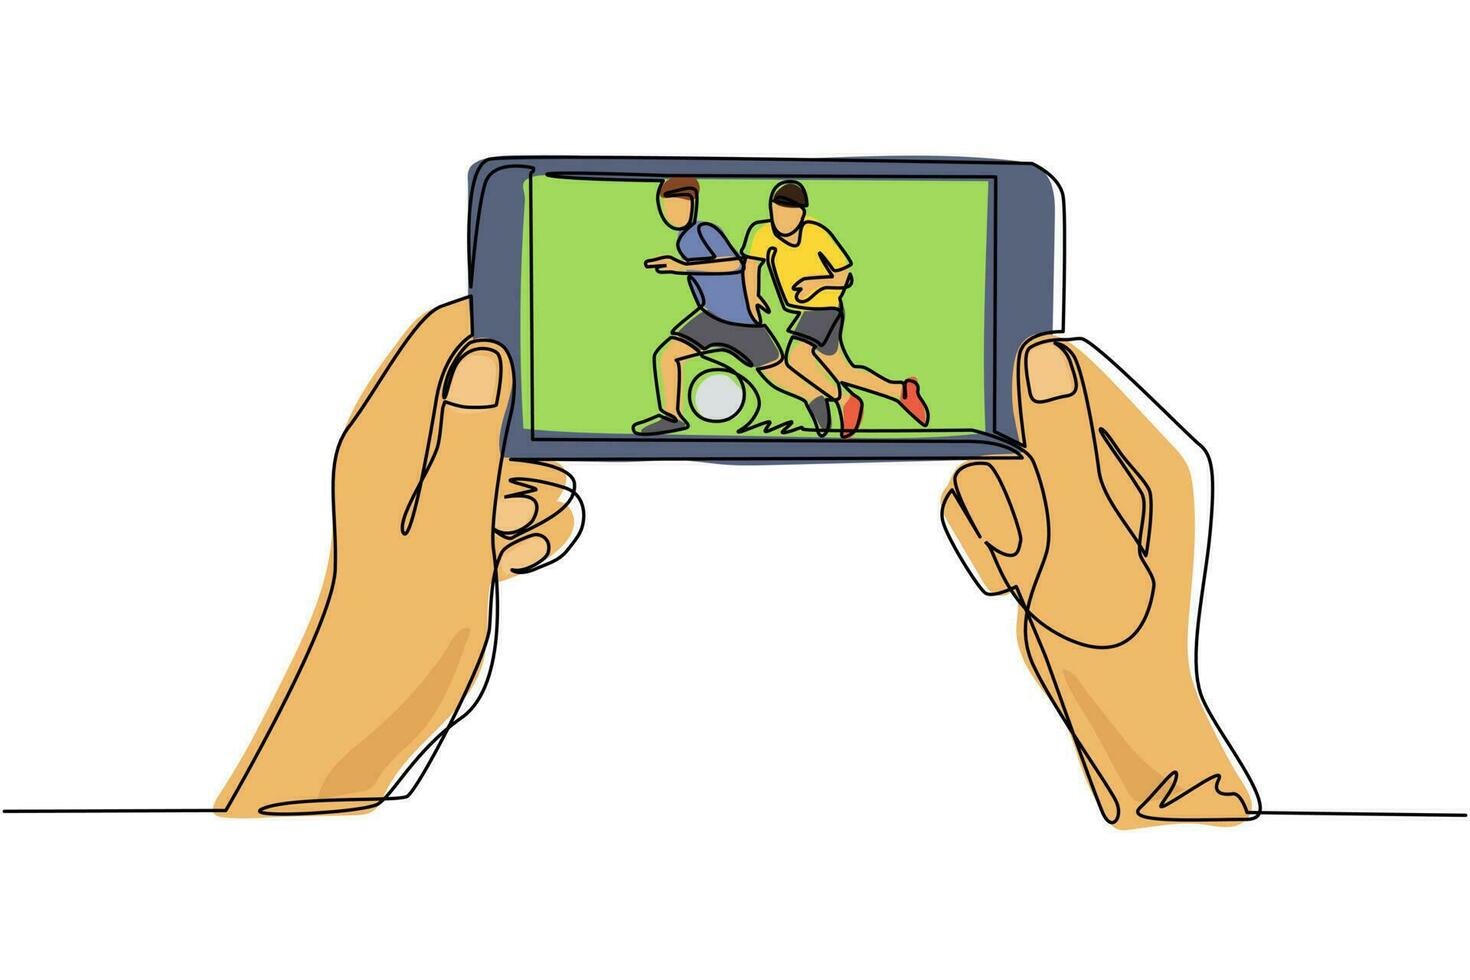 transmisión en vivo de una sola línea de fútbol o liga de fútbol en el teléfono móvil. manos del hombre sosteniendo el teléfono inteligente y viendo cualquier partido de fútbol en vivo en línea. ilustración de vector de diseño de dibujo de línea continua